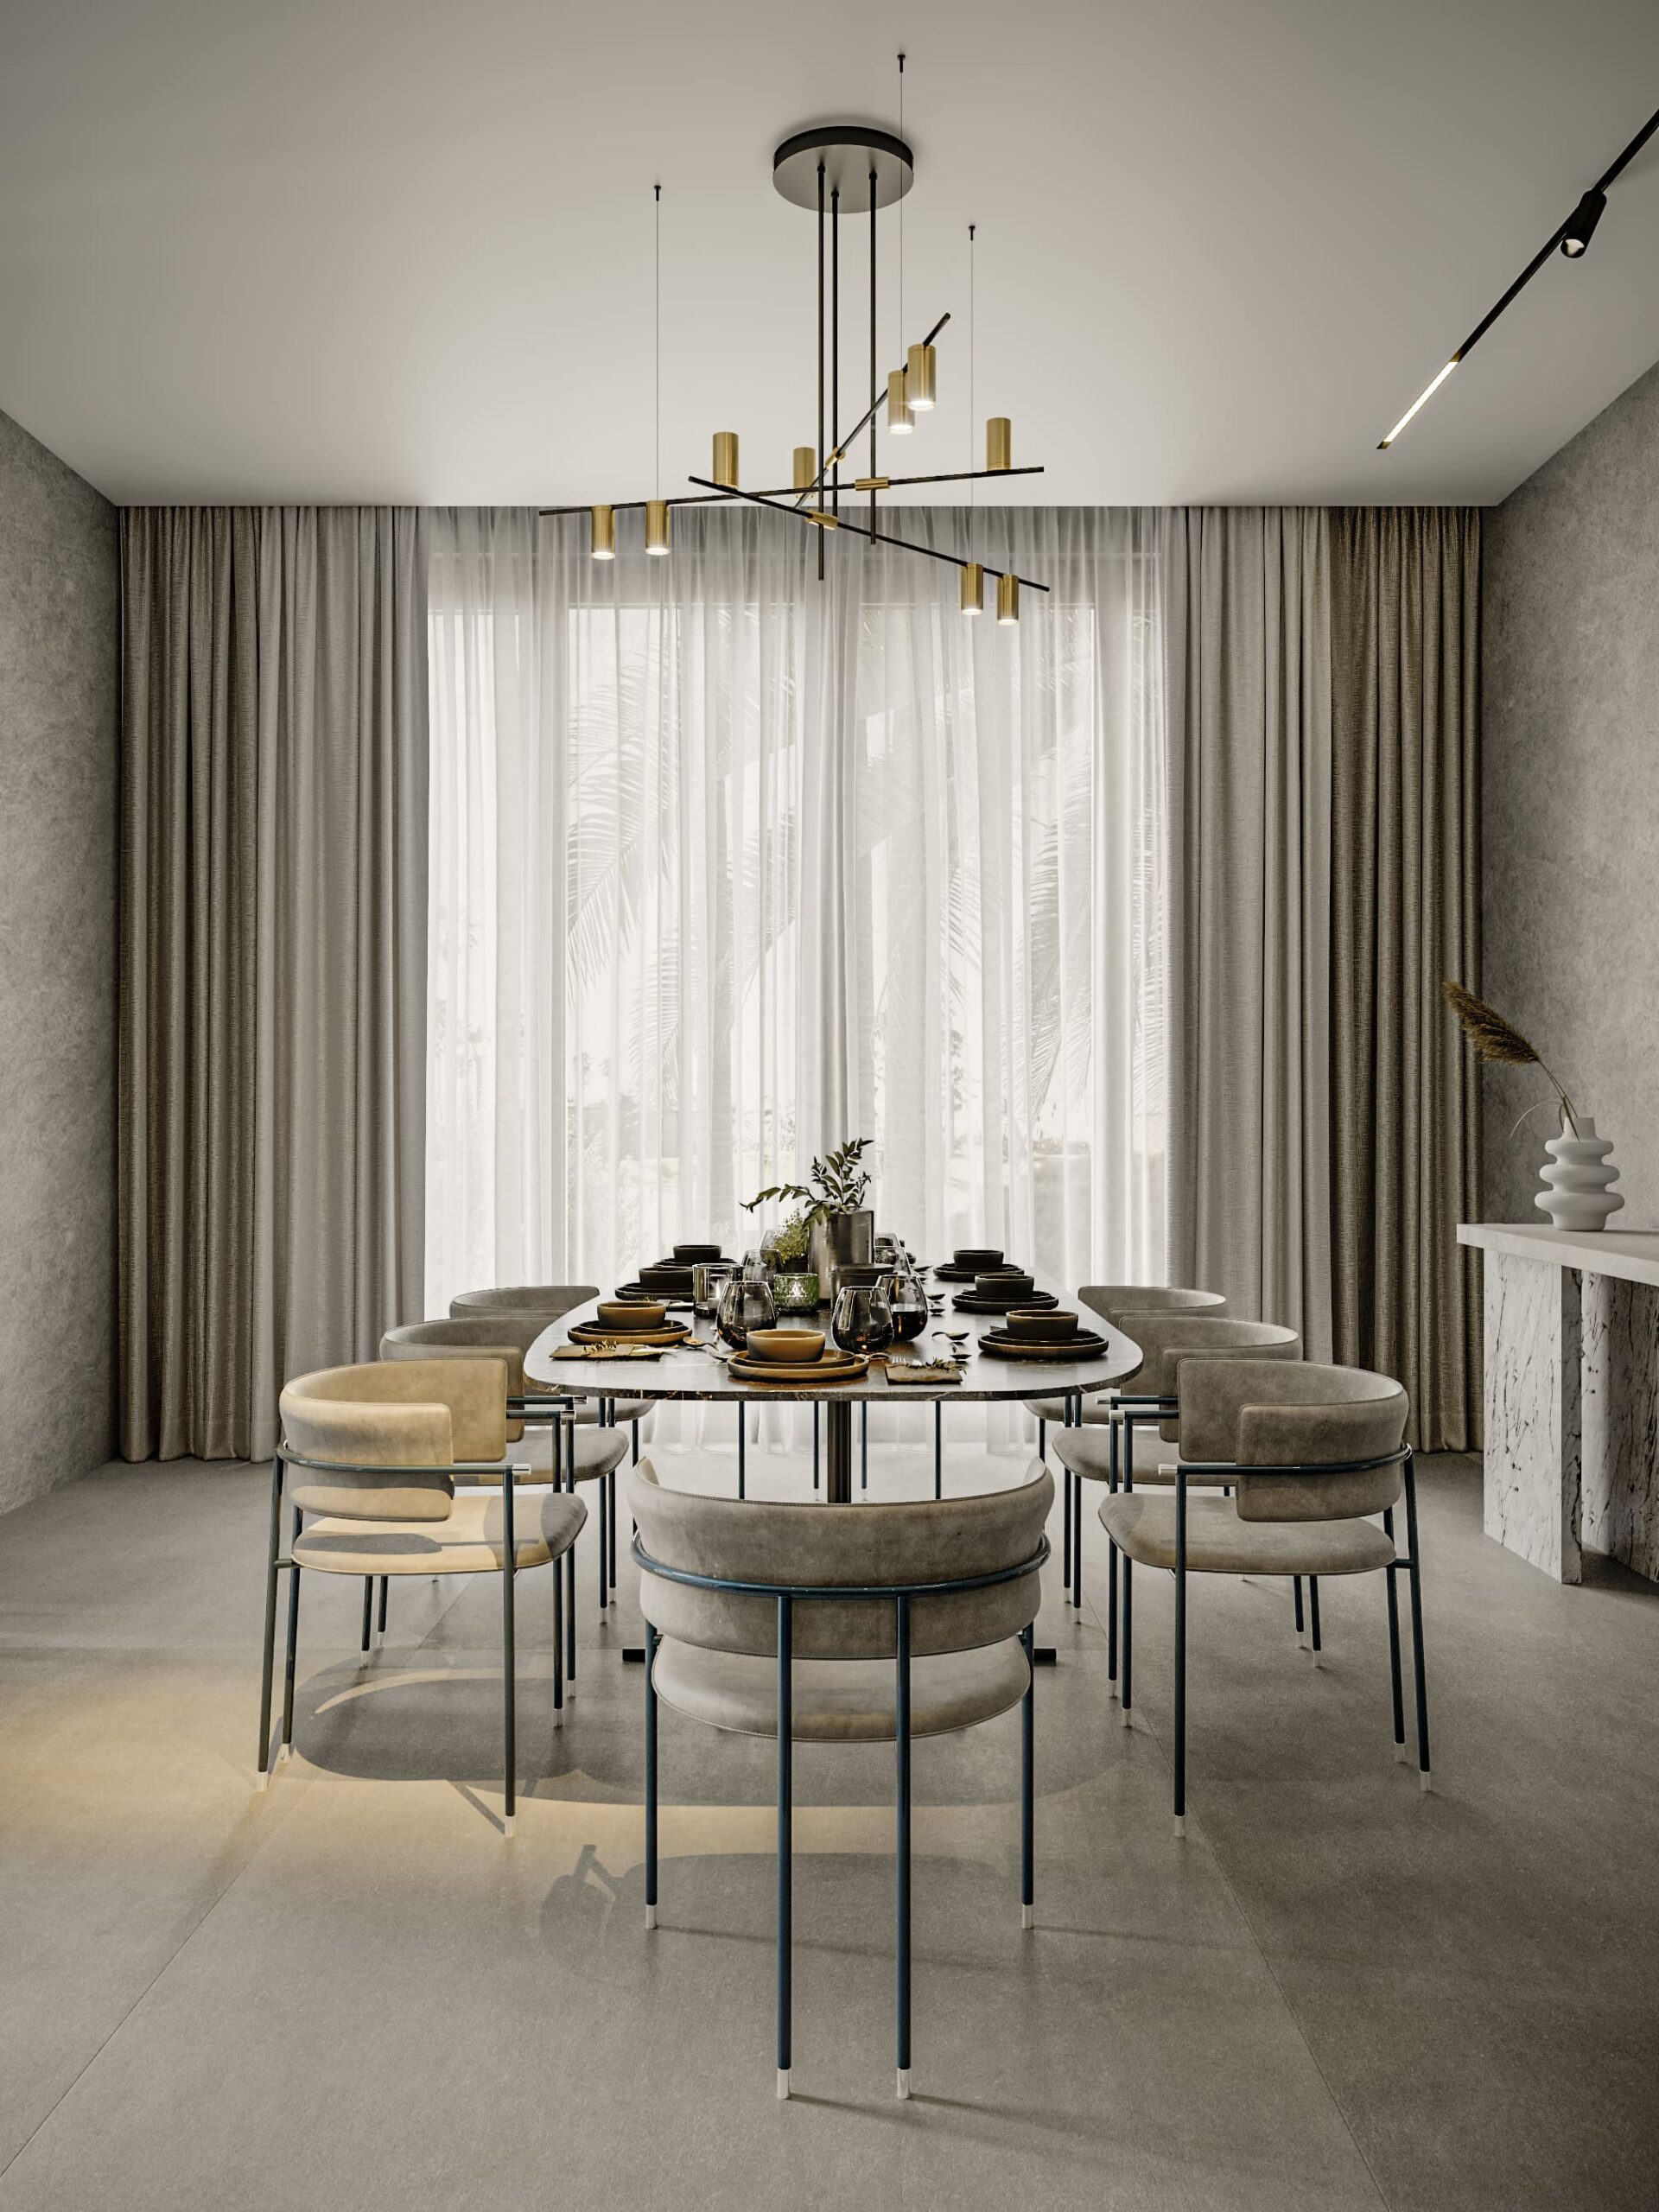 Interior design rad villa dubai hills by kg design guest kitchen